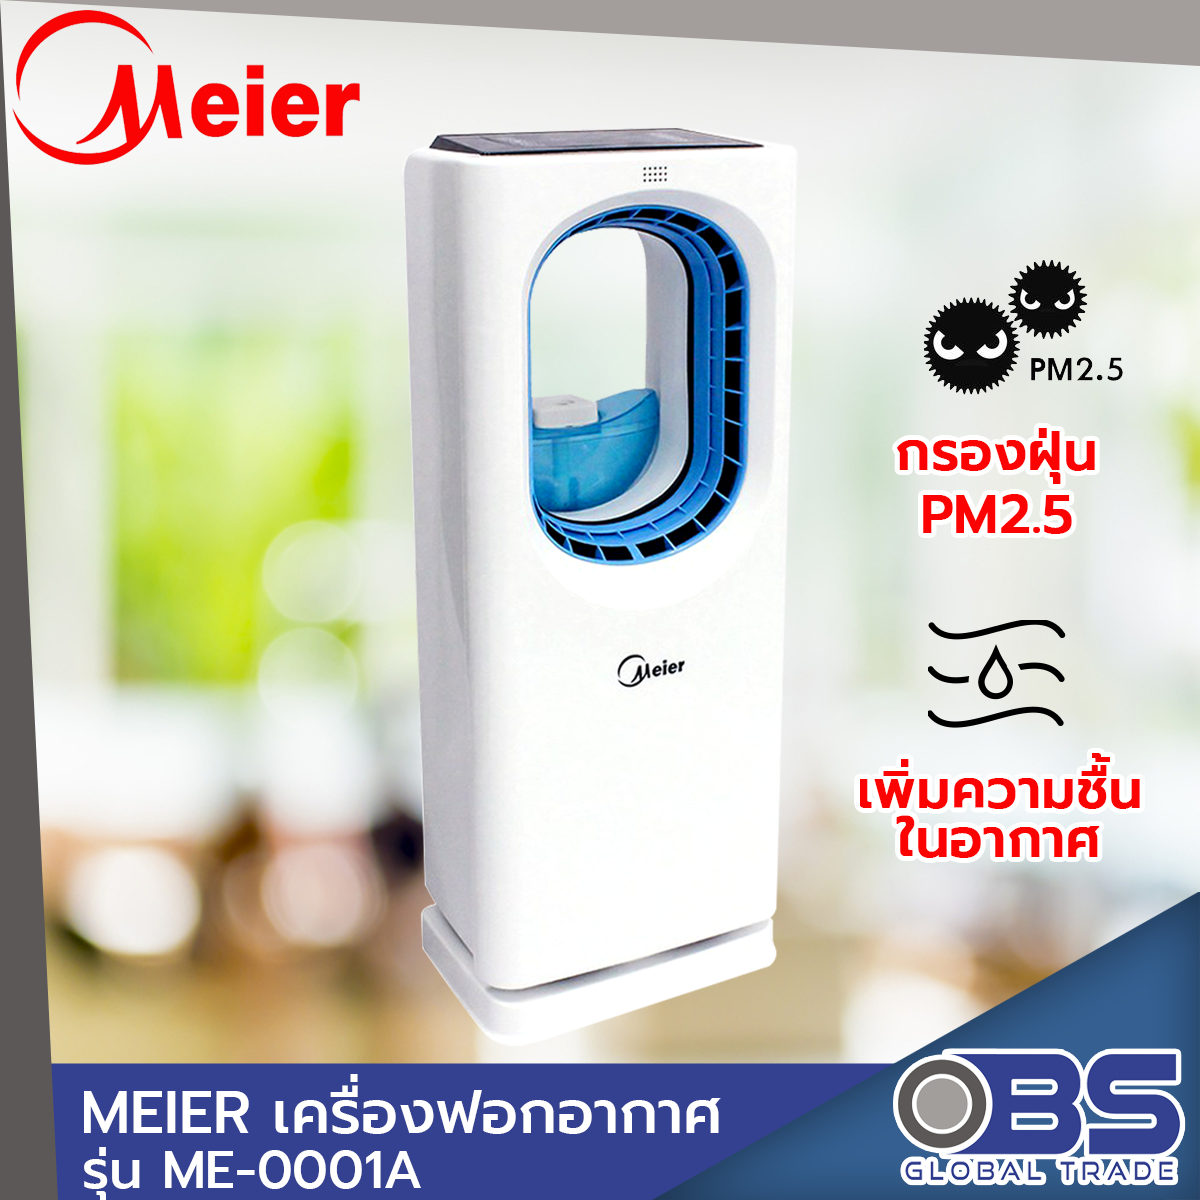 เครื่องฟอกอากาศ MEIER รุ่น ME-0001A เครื่องฟอกอากาศในบ้าน กรองฝุ่น PM 2.5 ประหยัดพลังงาน เสียงเงียบ